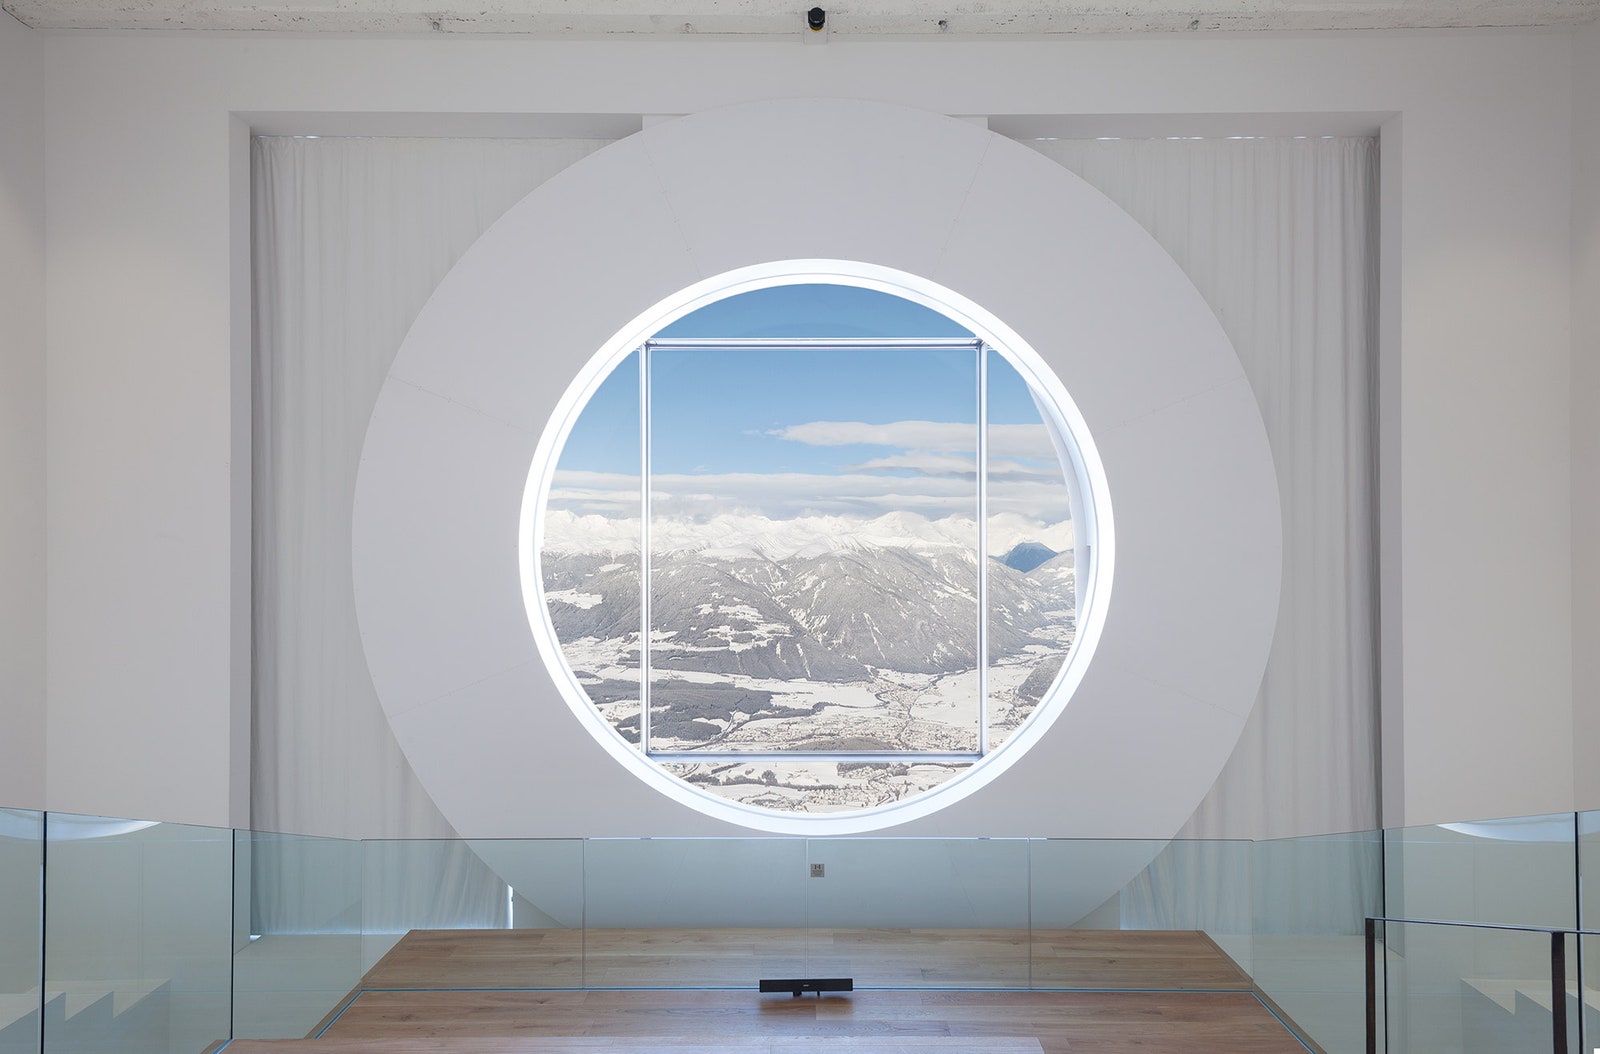 Архитектурный проект музея Райнхольда Месснера в Доломитовых Альпах — Lumen